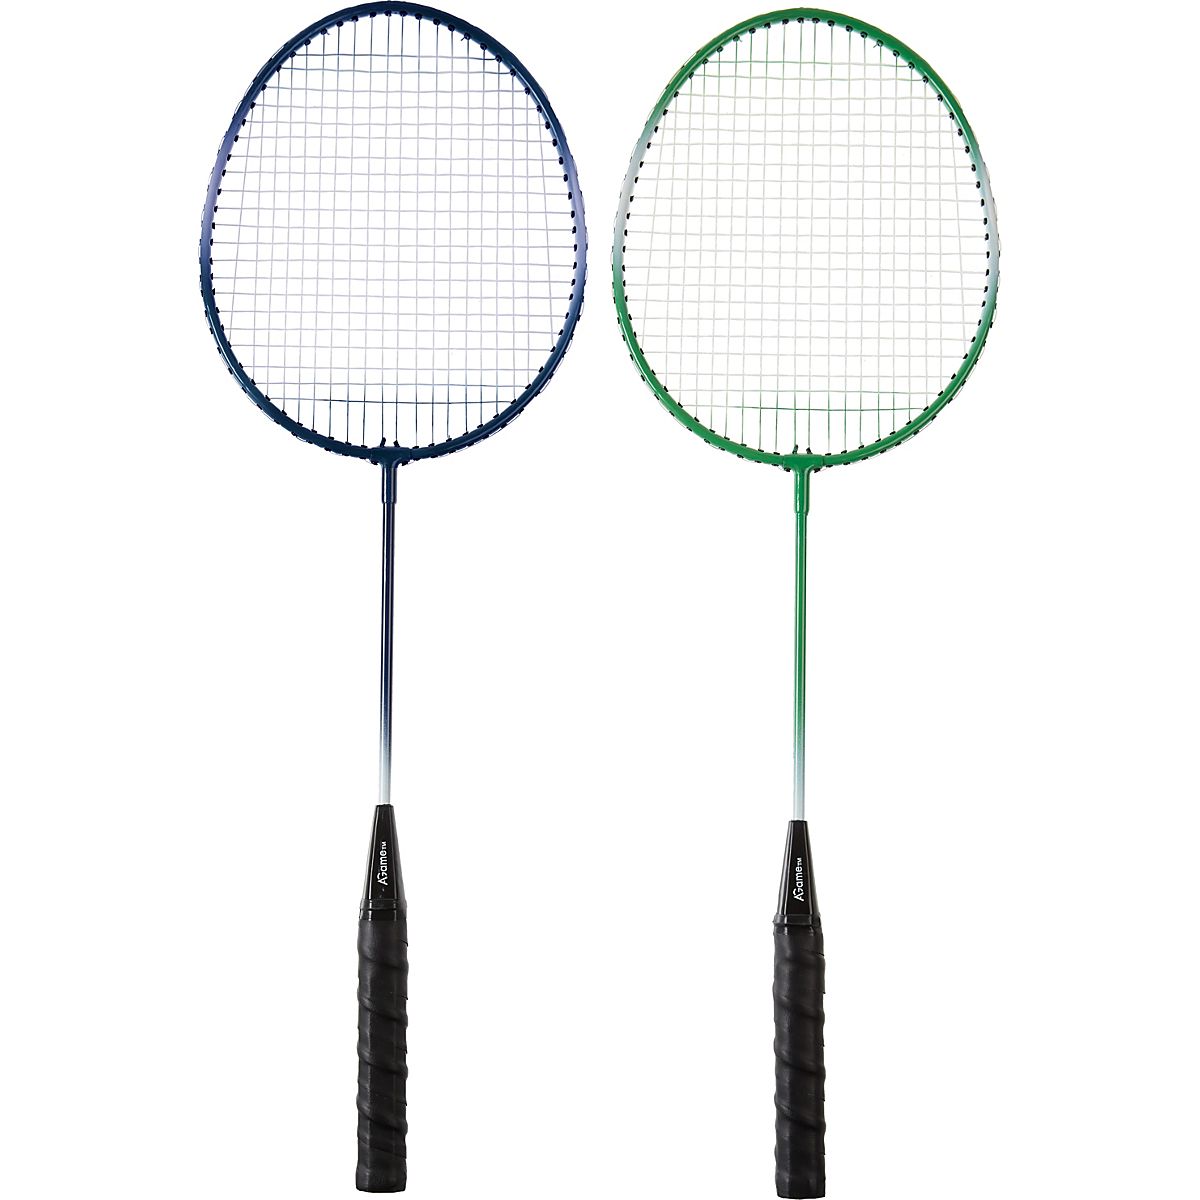 AGame 2-Player Badminton Racquet Set Academy